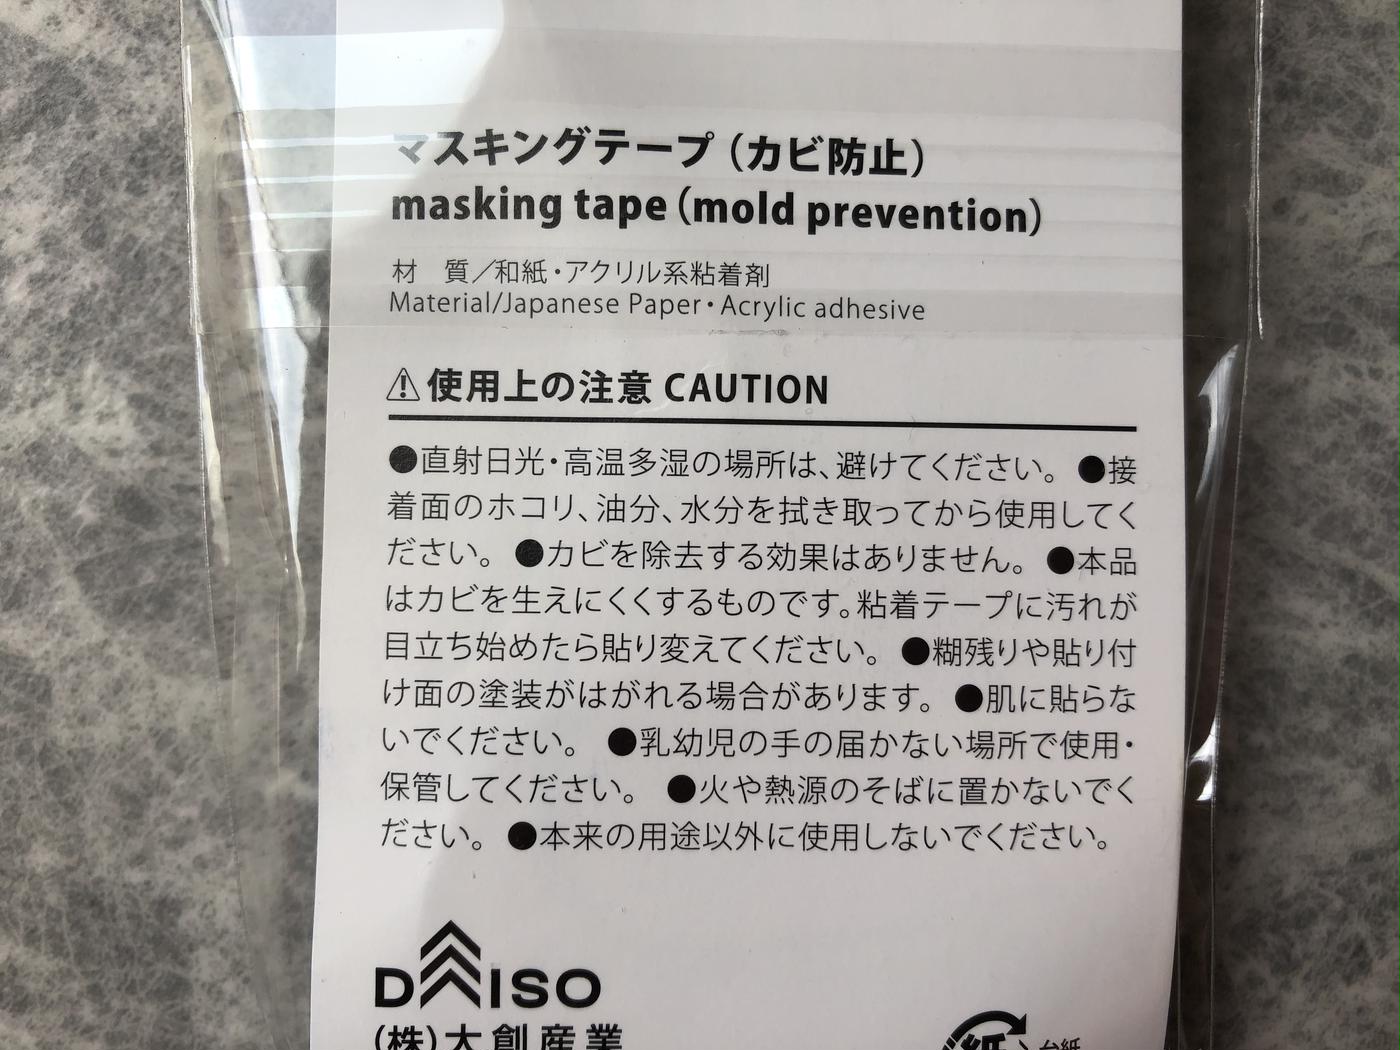 貼るだけで防カビ効果 ダイソーのマスキングテープで掃除も快適に トクバイニュース